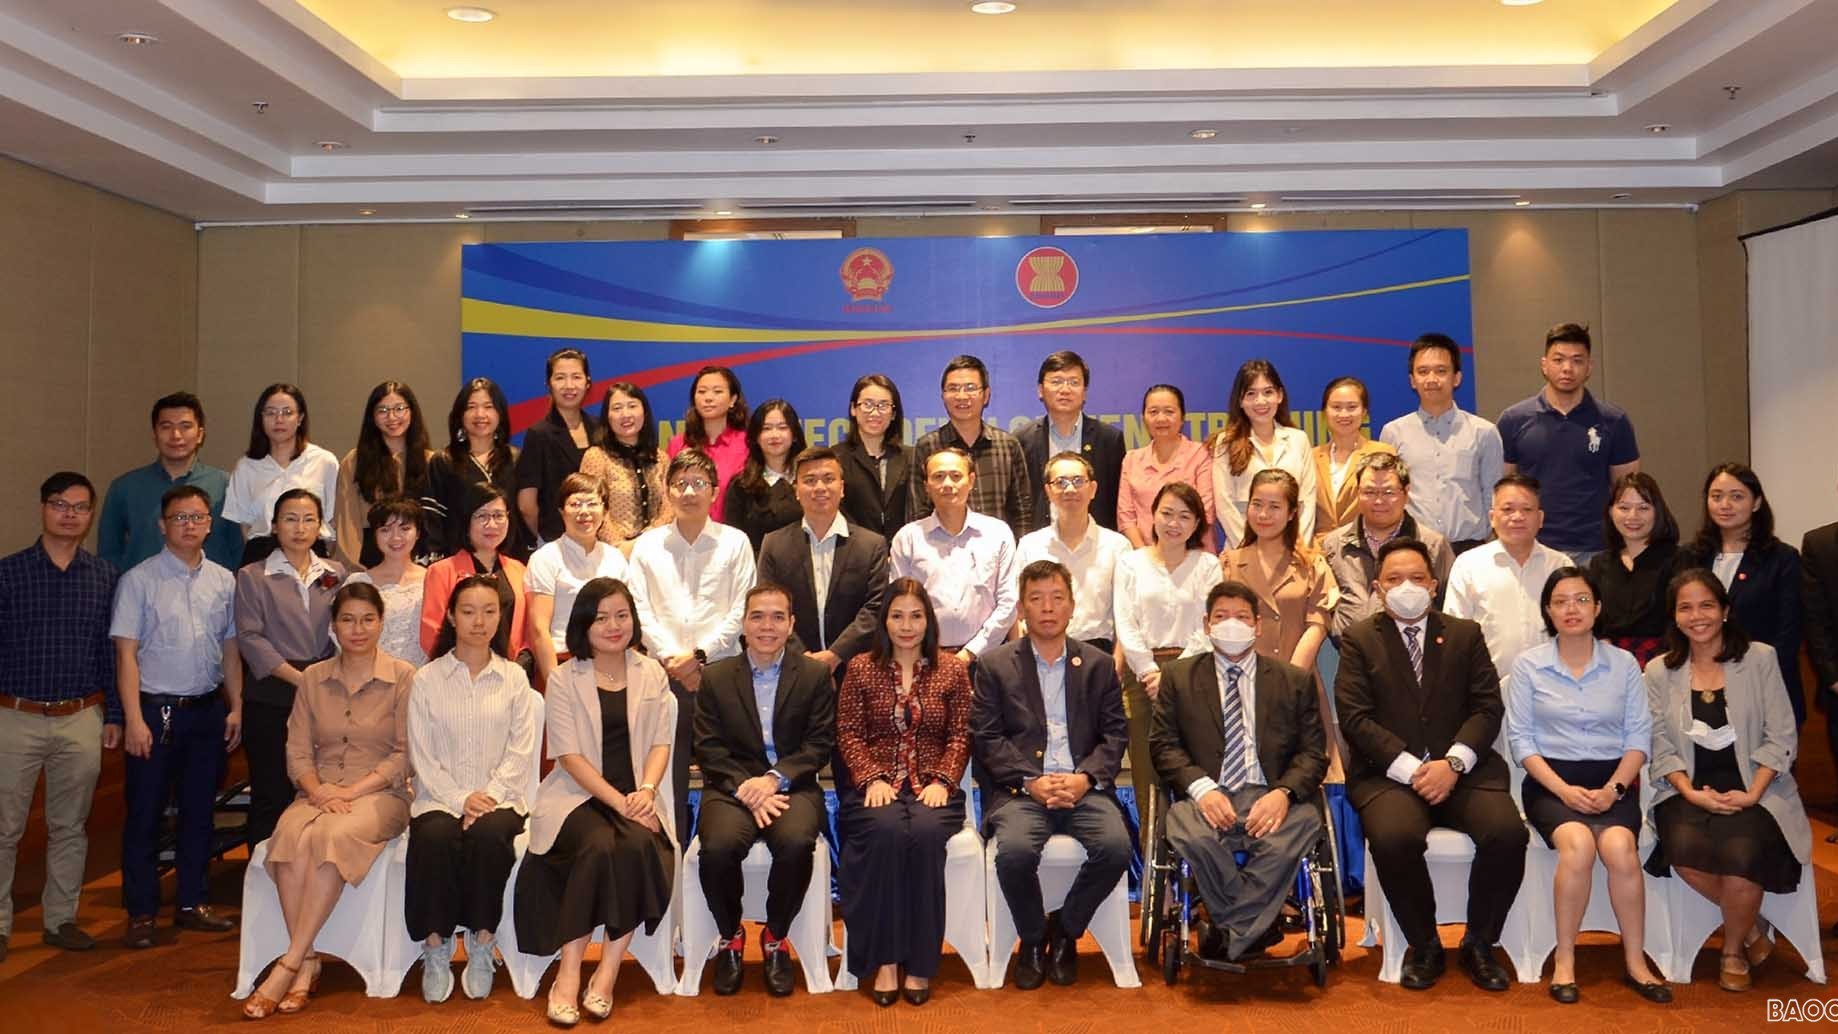 Đào tạo nâng cao năng lực xây dựng dự án hợp tác ASEAN